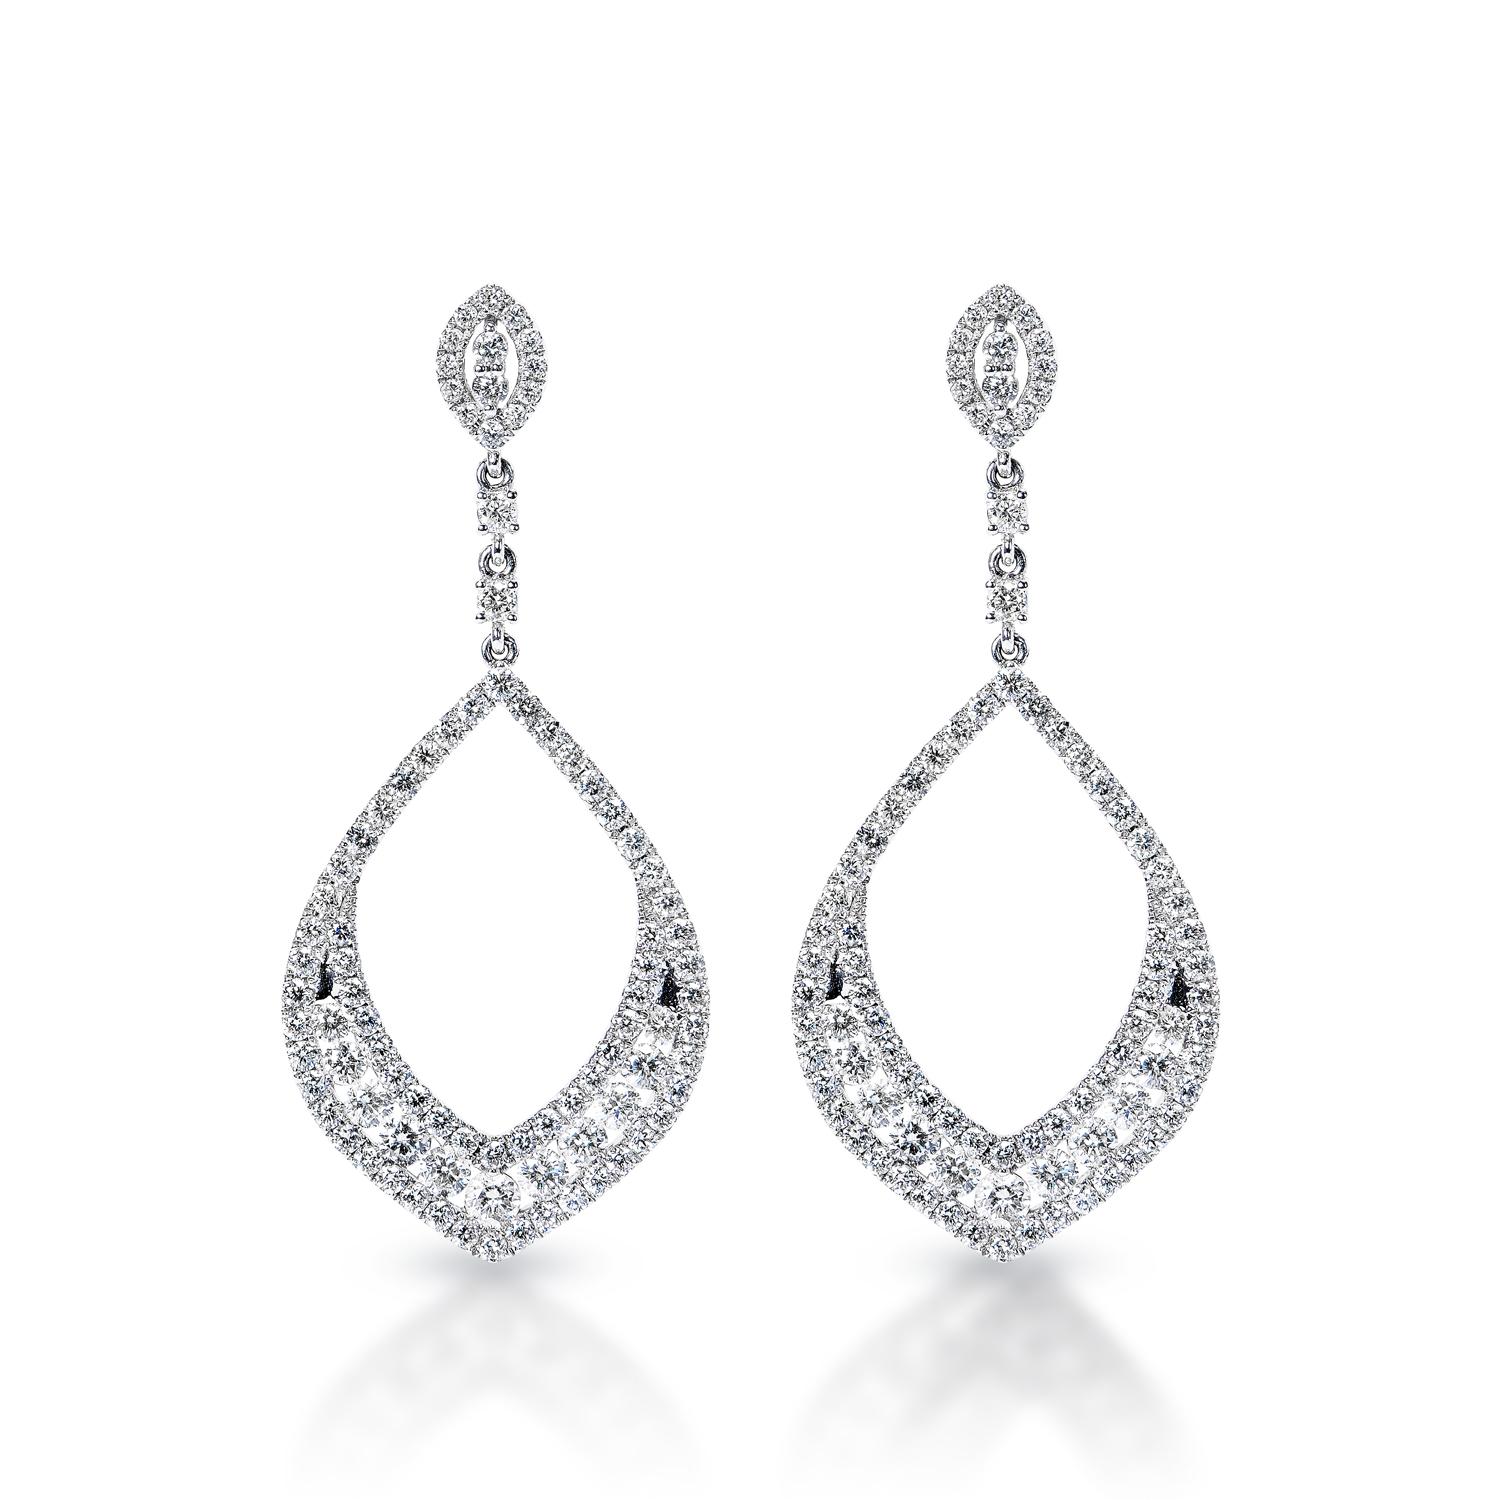 Diamant-Kronleuchter-Ohrringe für Damen:

Karatgewicht: 4,60 Karat
Metall: 14 Karat Weißgold
Stil: Ohrringe baumeln